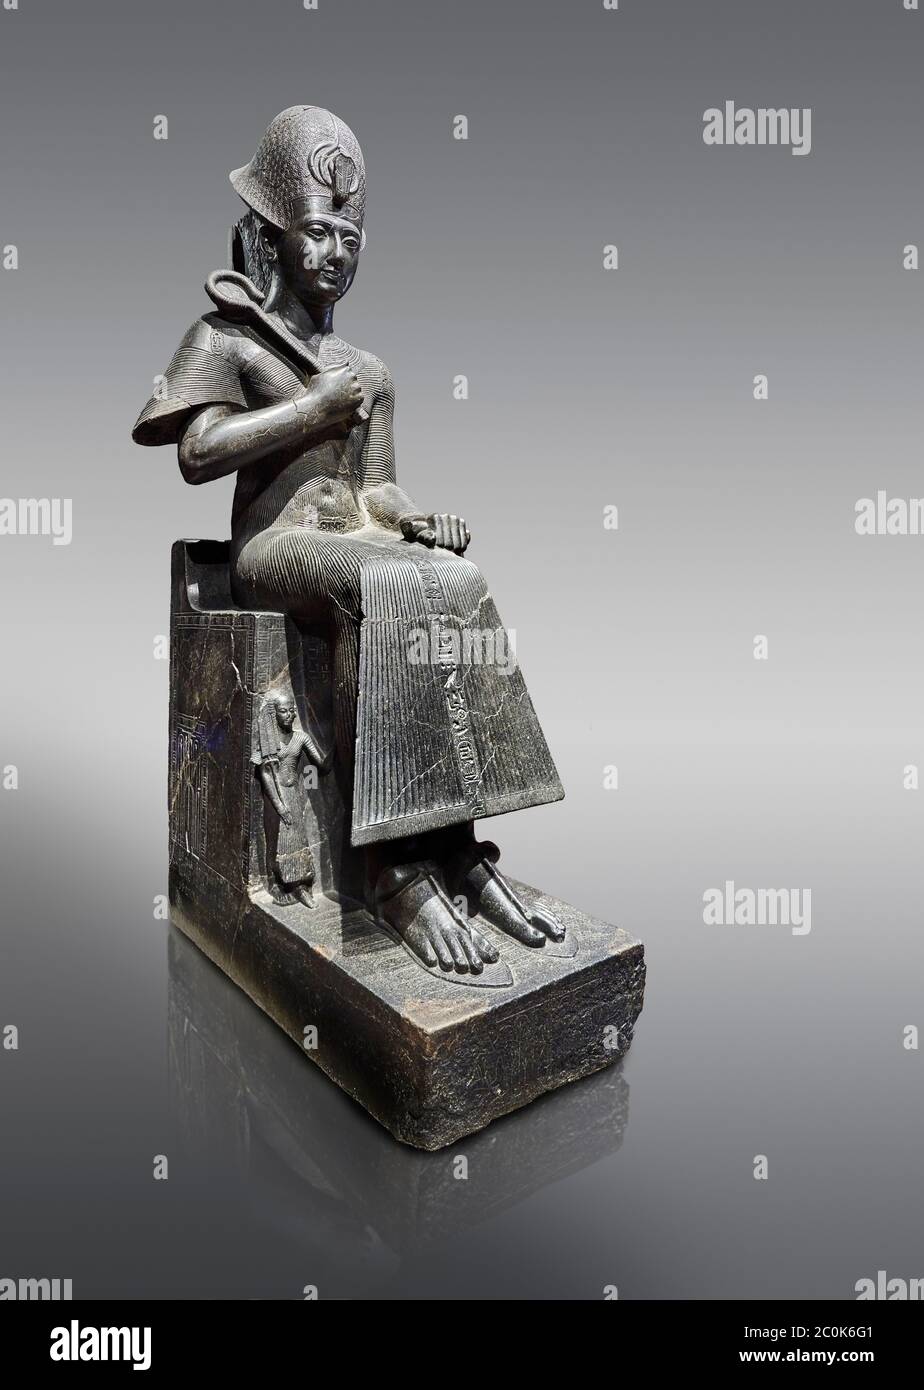 Alte ägyptische Statue von Ramesses II. Granodiorit, Neues Königreich, 19. Dynastie, (1279-1213 v. Chr.), Karnak, Tempel von Amon. Ägyptisches Museum, Turin. Grau Stockfoto